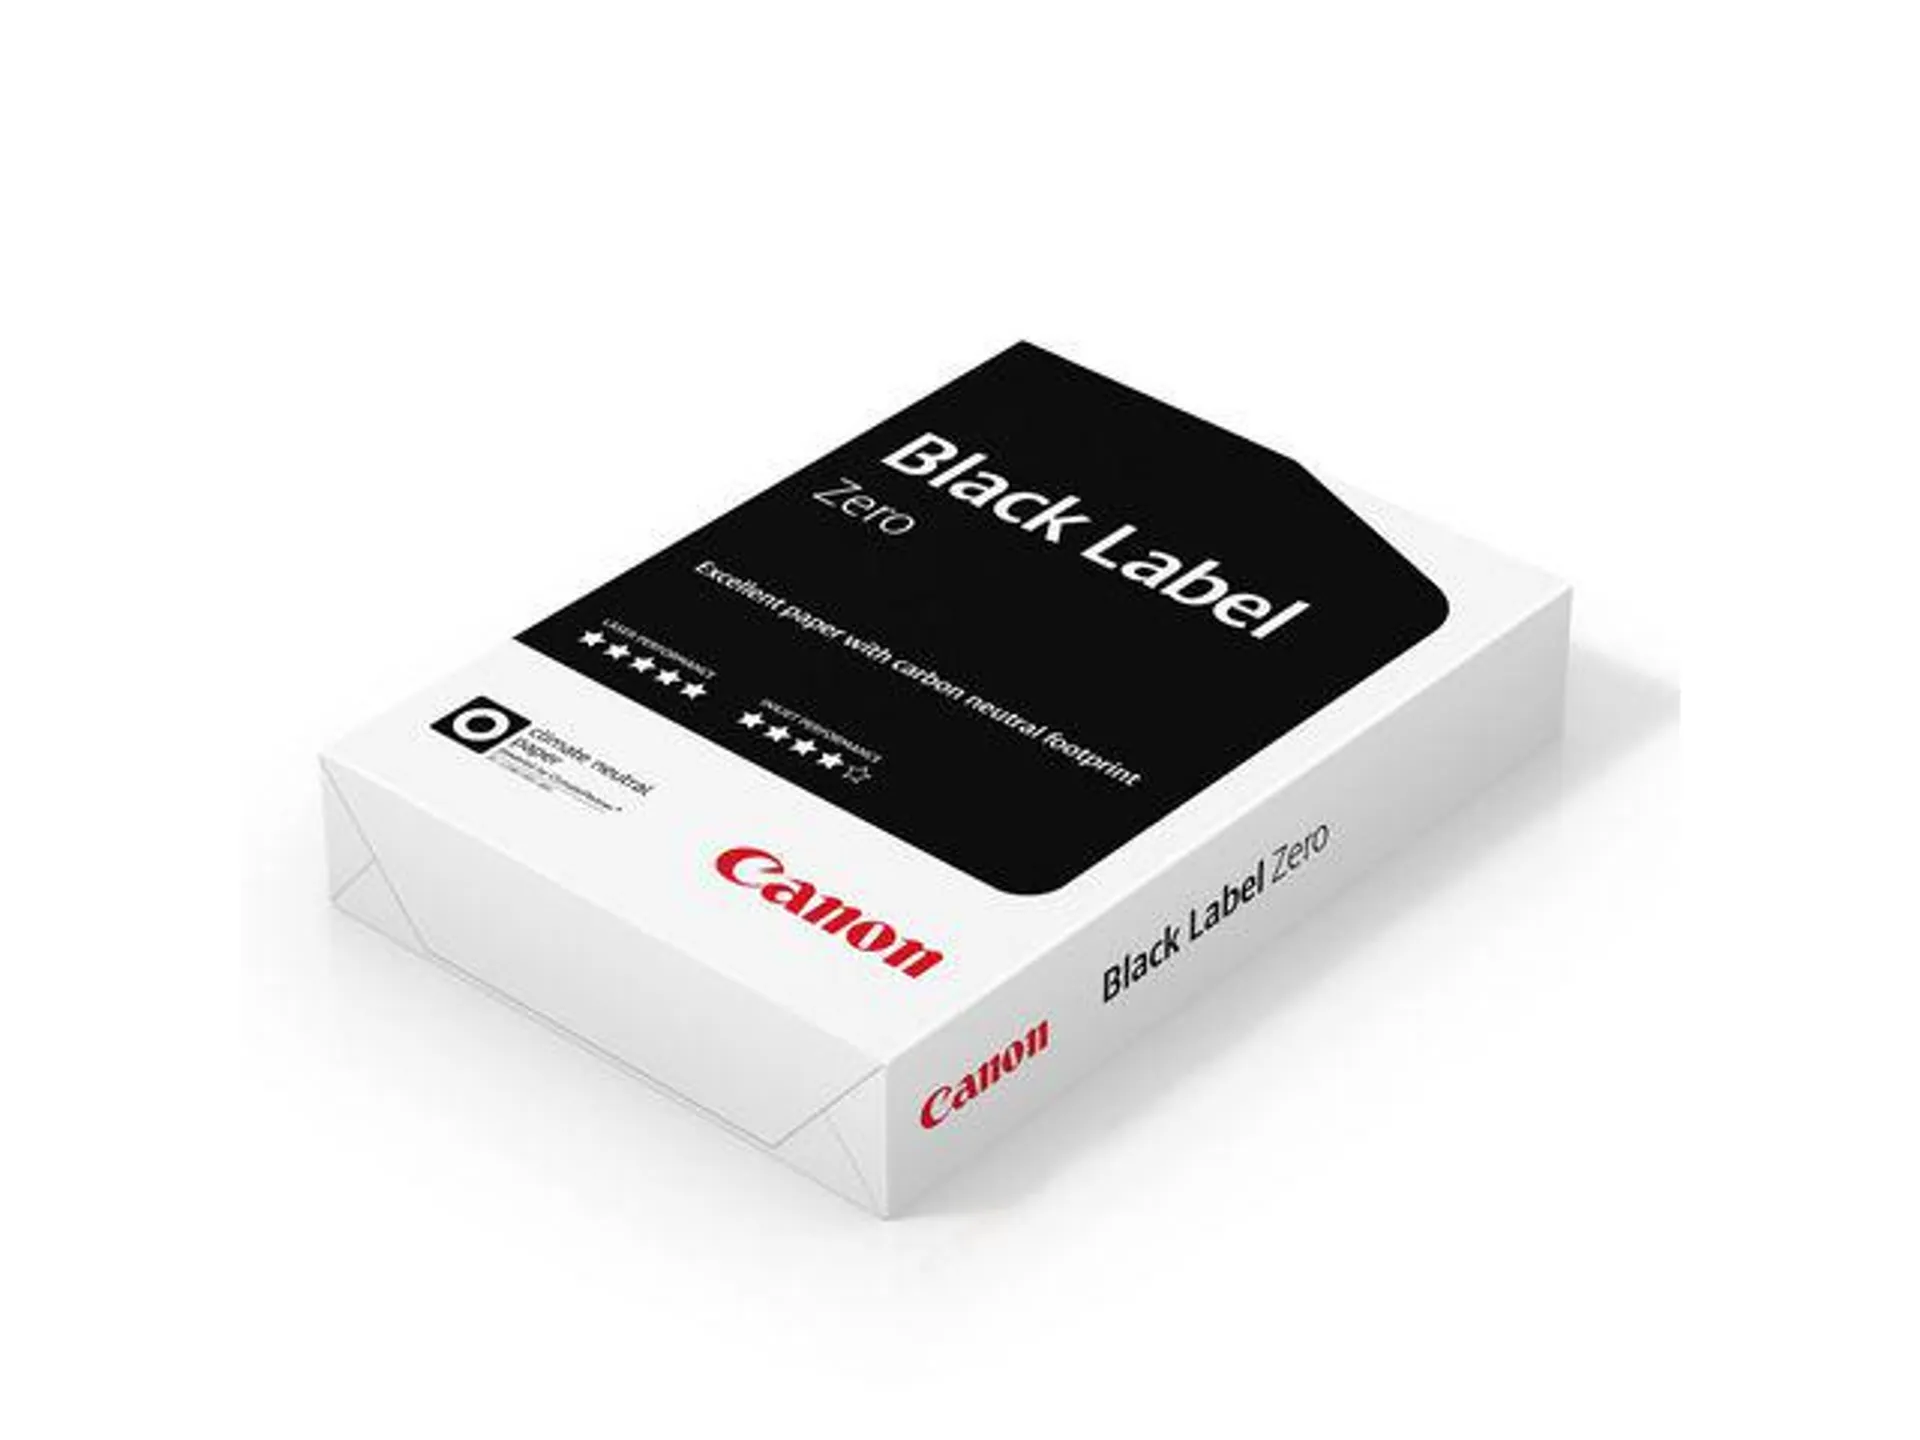 Canon Black Label Zero Papier A4 80 g/m² Wit